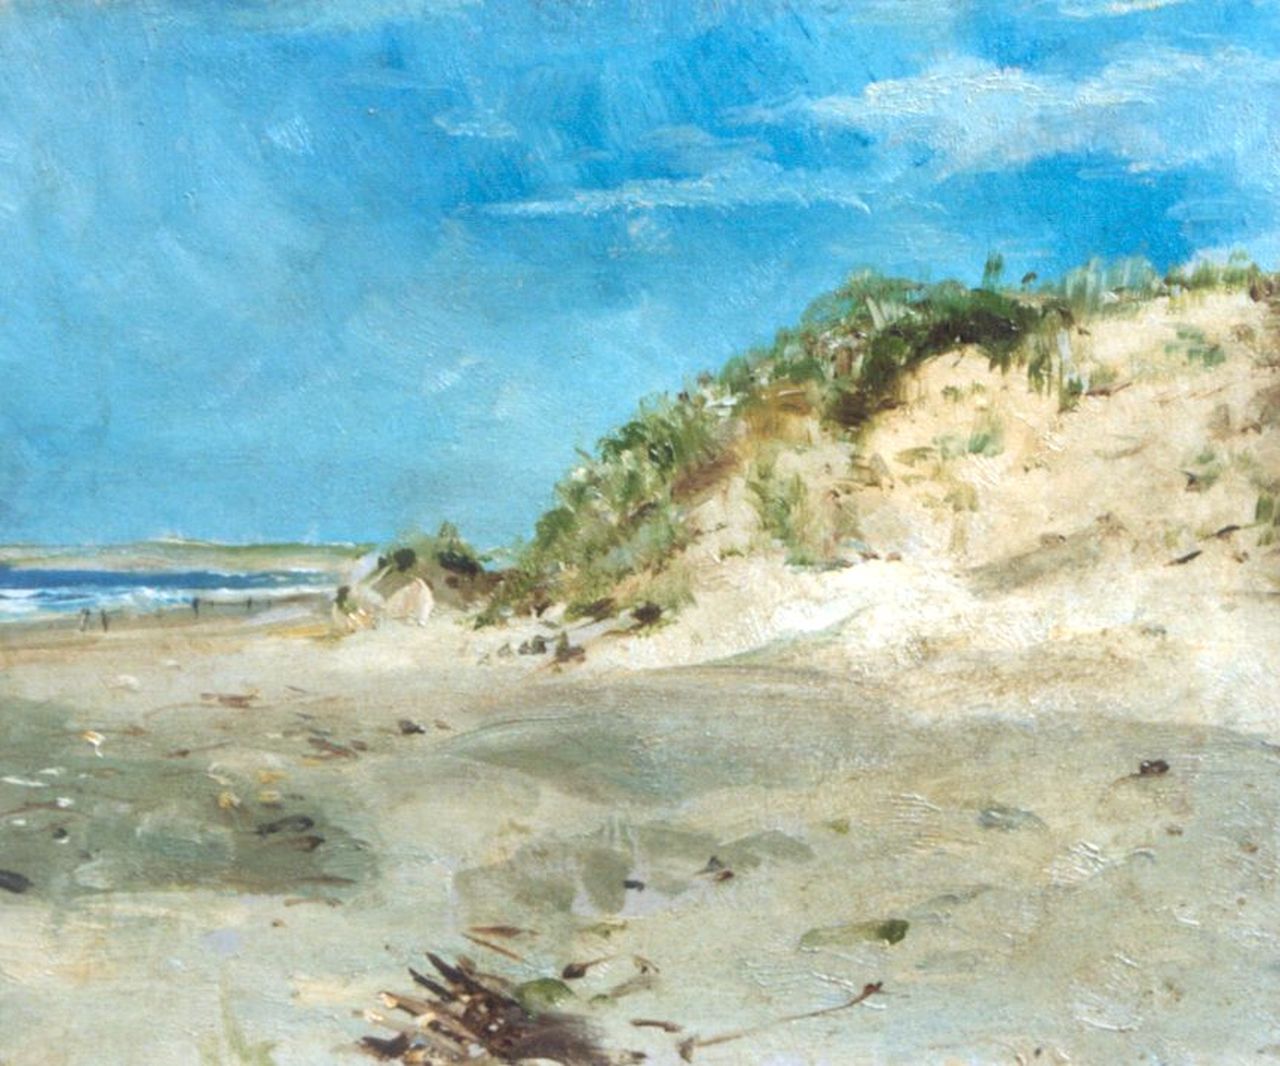 Bettinger G.P.M.  | 'Gustave' Paul Marie Bettinger, Opening in de duinen, Scheveningen, olieverf op schilderskarton 19,0 x 23,1 cm